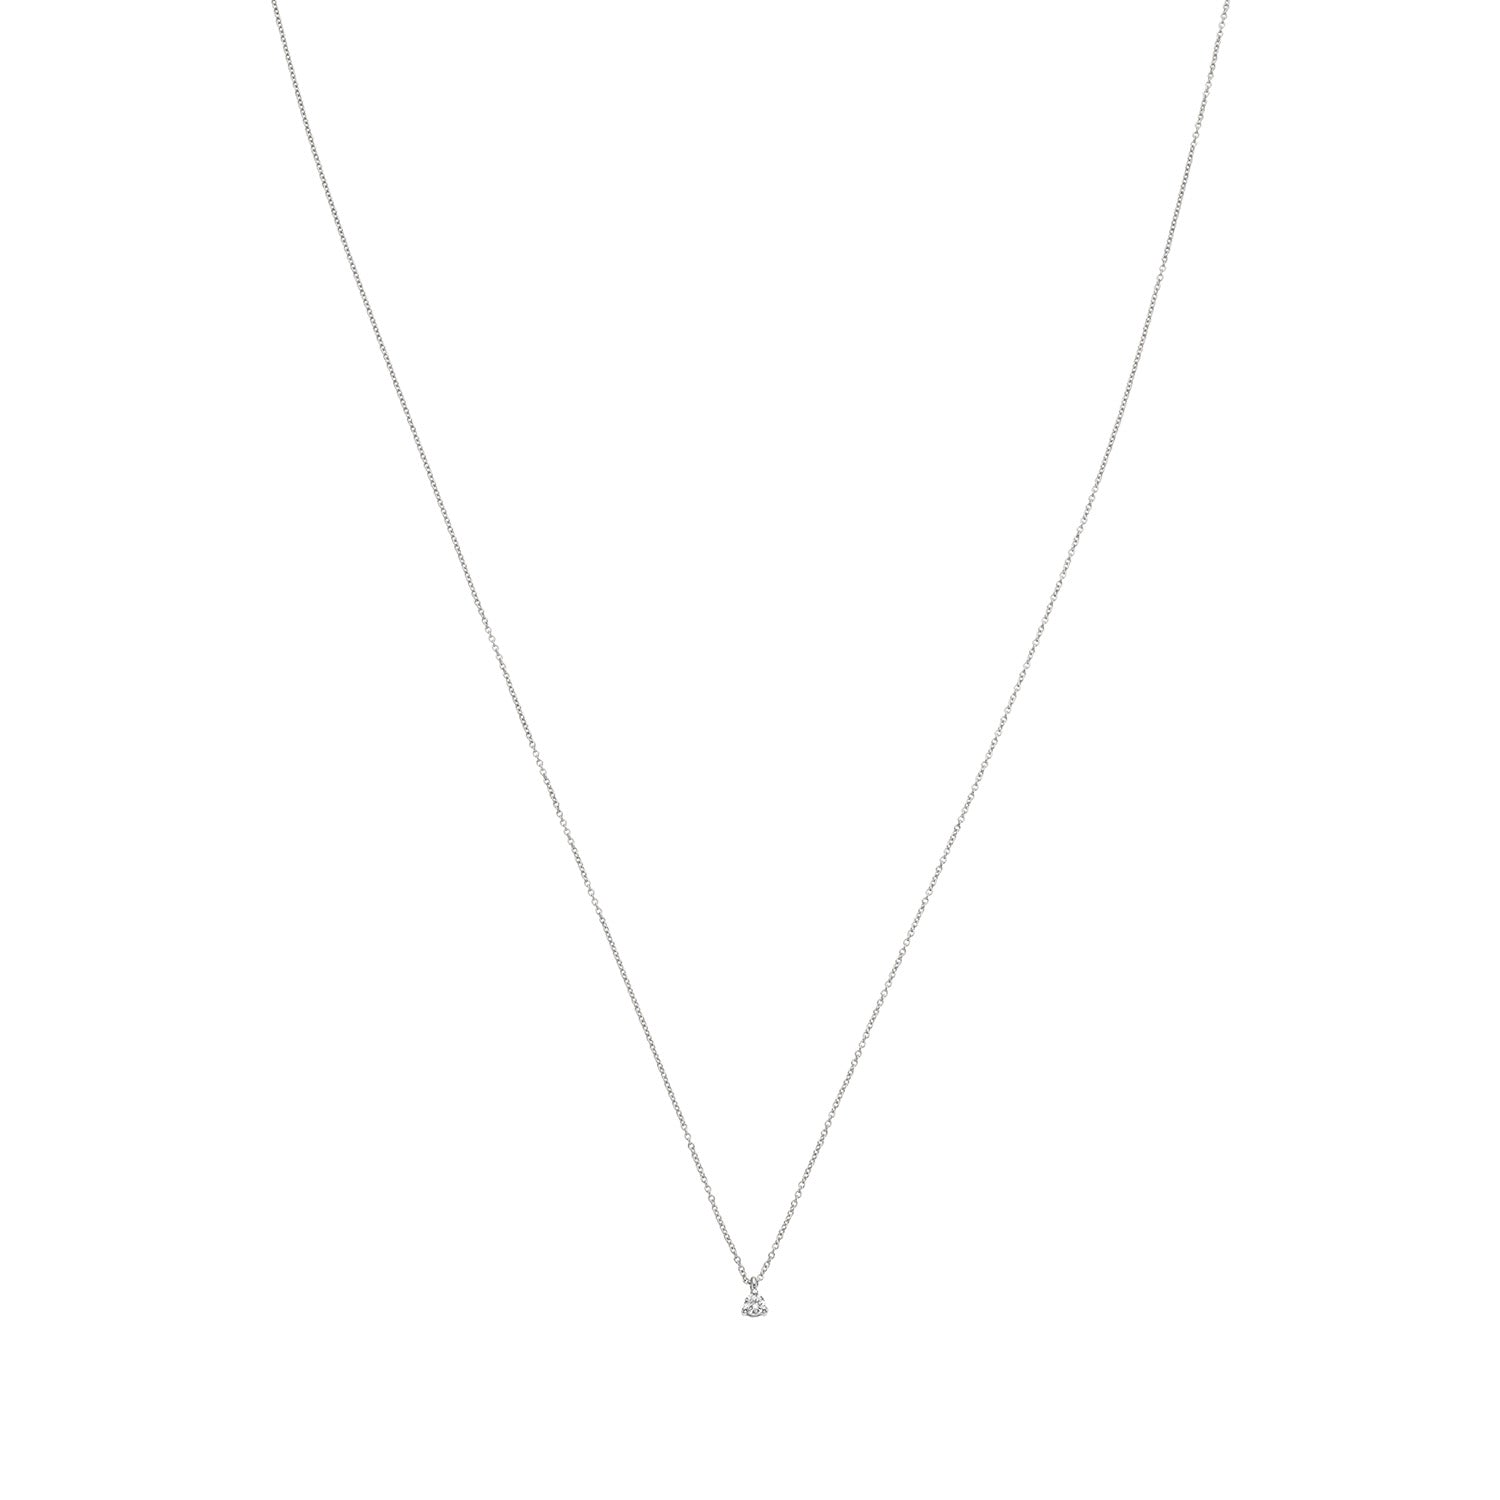 Diamond by Vibholm - halskæde 14 kt. hvidguld - 0,05 ct | 3.495,00 kr Diamond Fri fragt ved køb over 299 kr | Vibholm